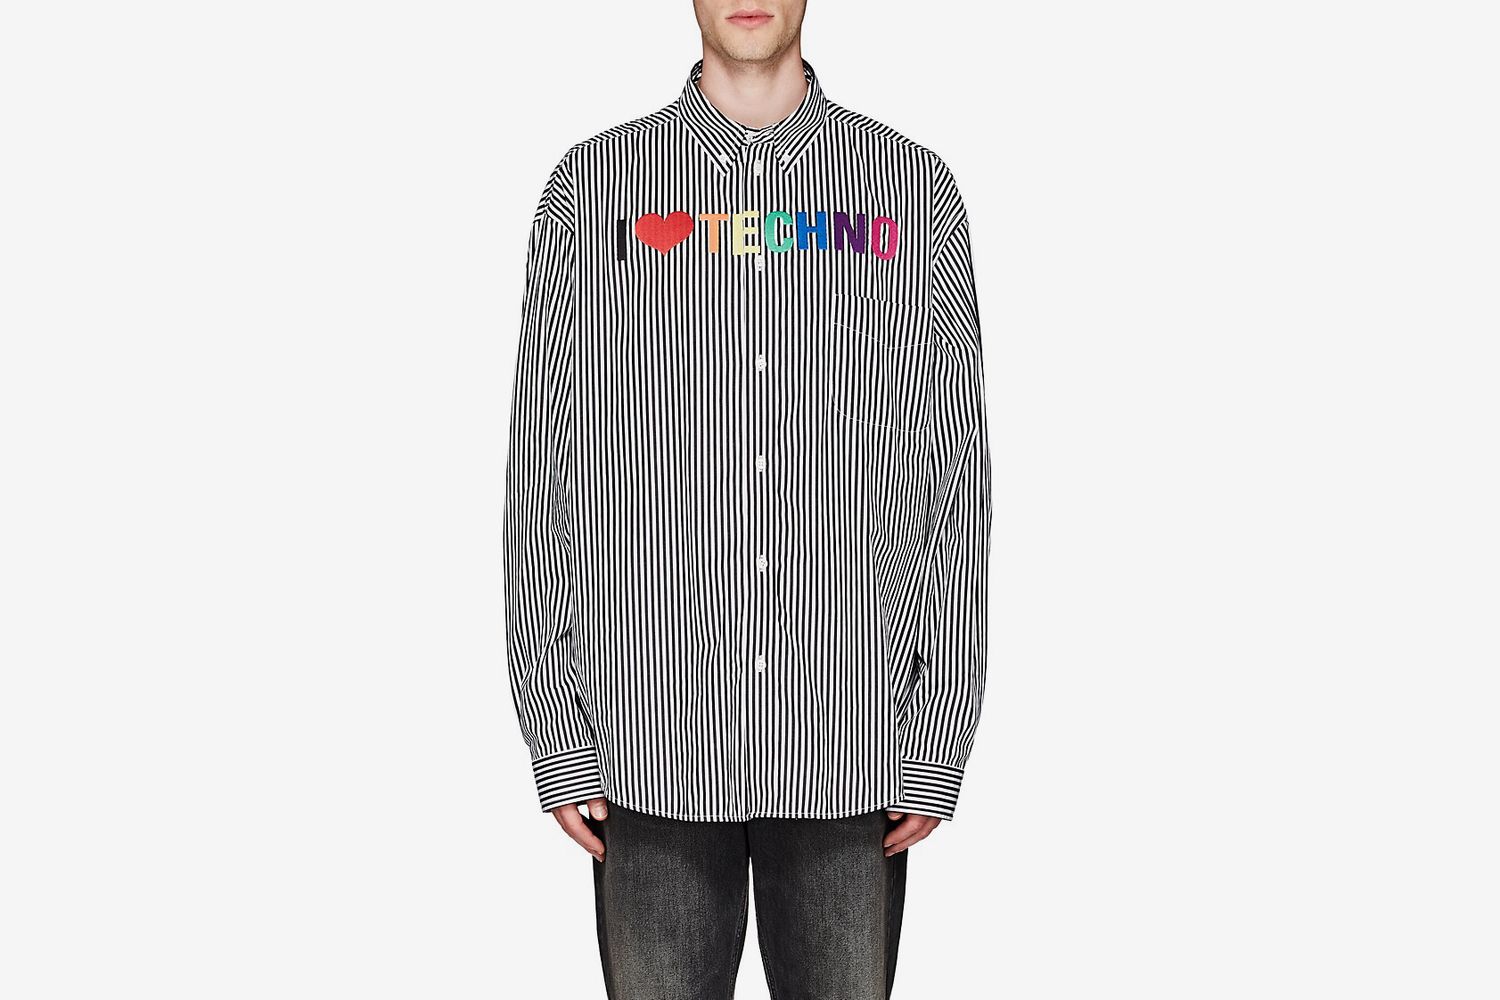 "I Love Techno" Striped Cotton Shirt